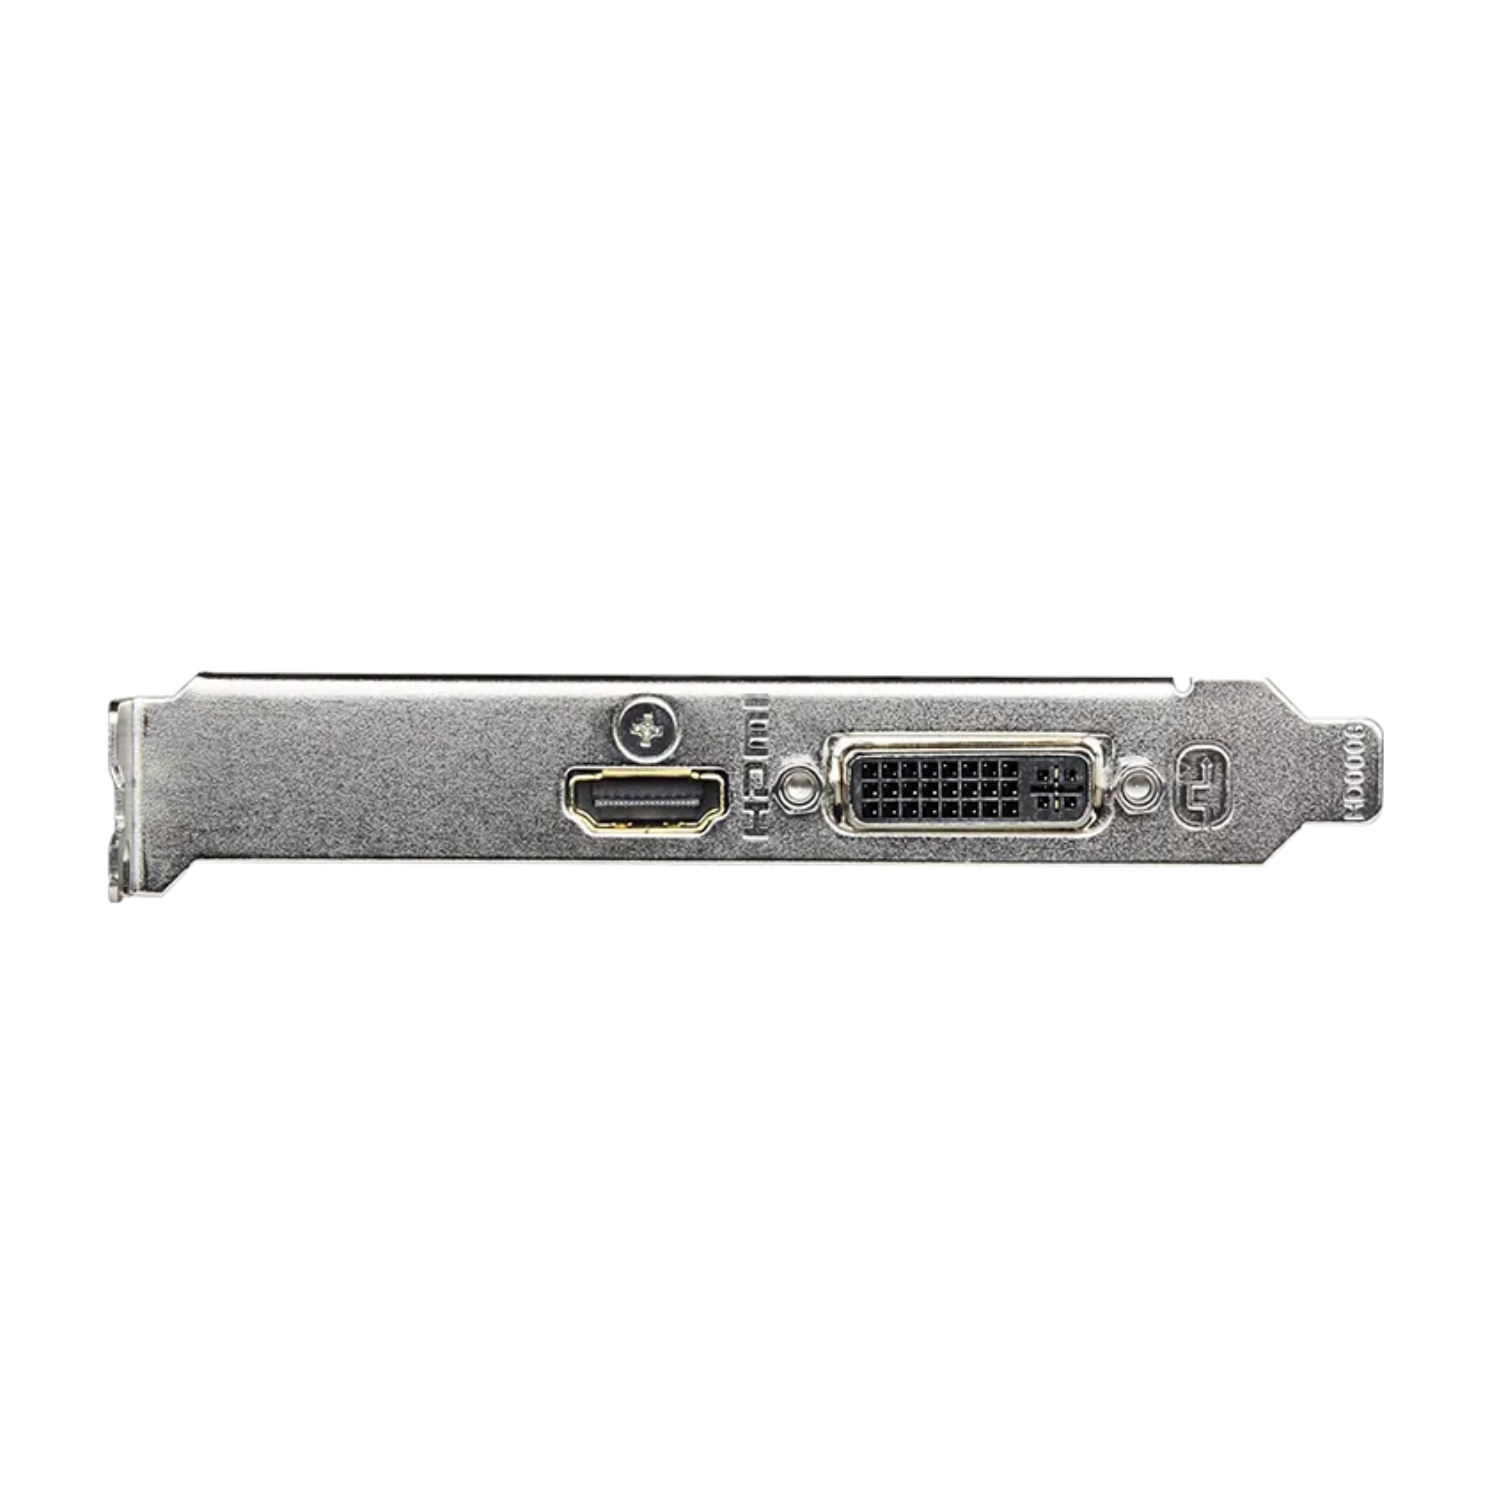 Tarjeta de Video Gigabyte GV-N730D5-2GL GDDR5 PCIe 64-Bits